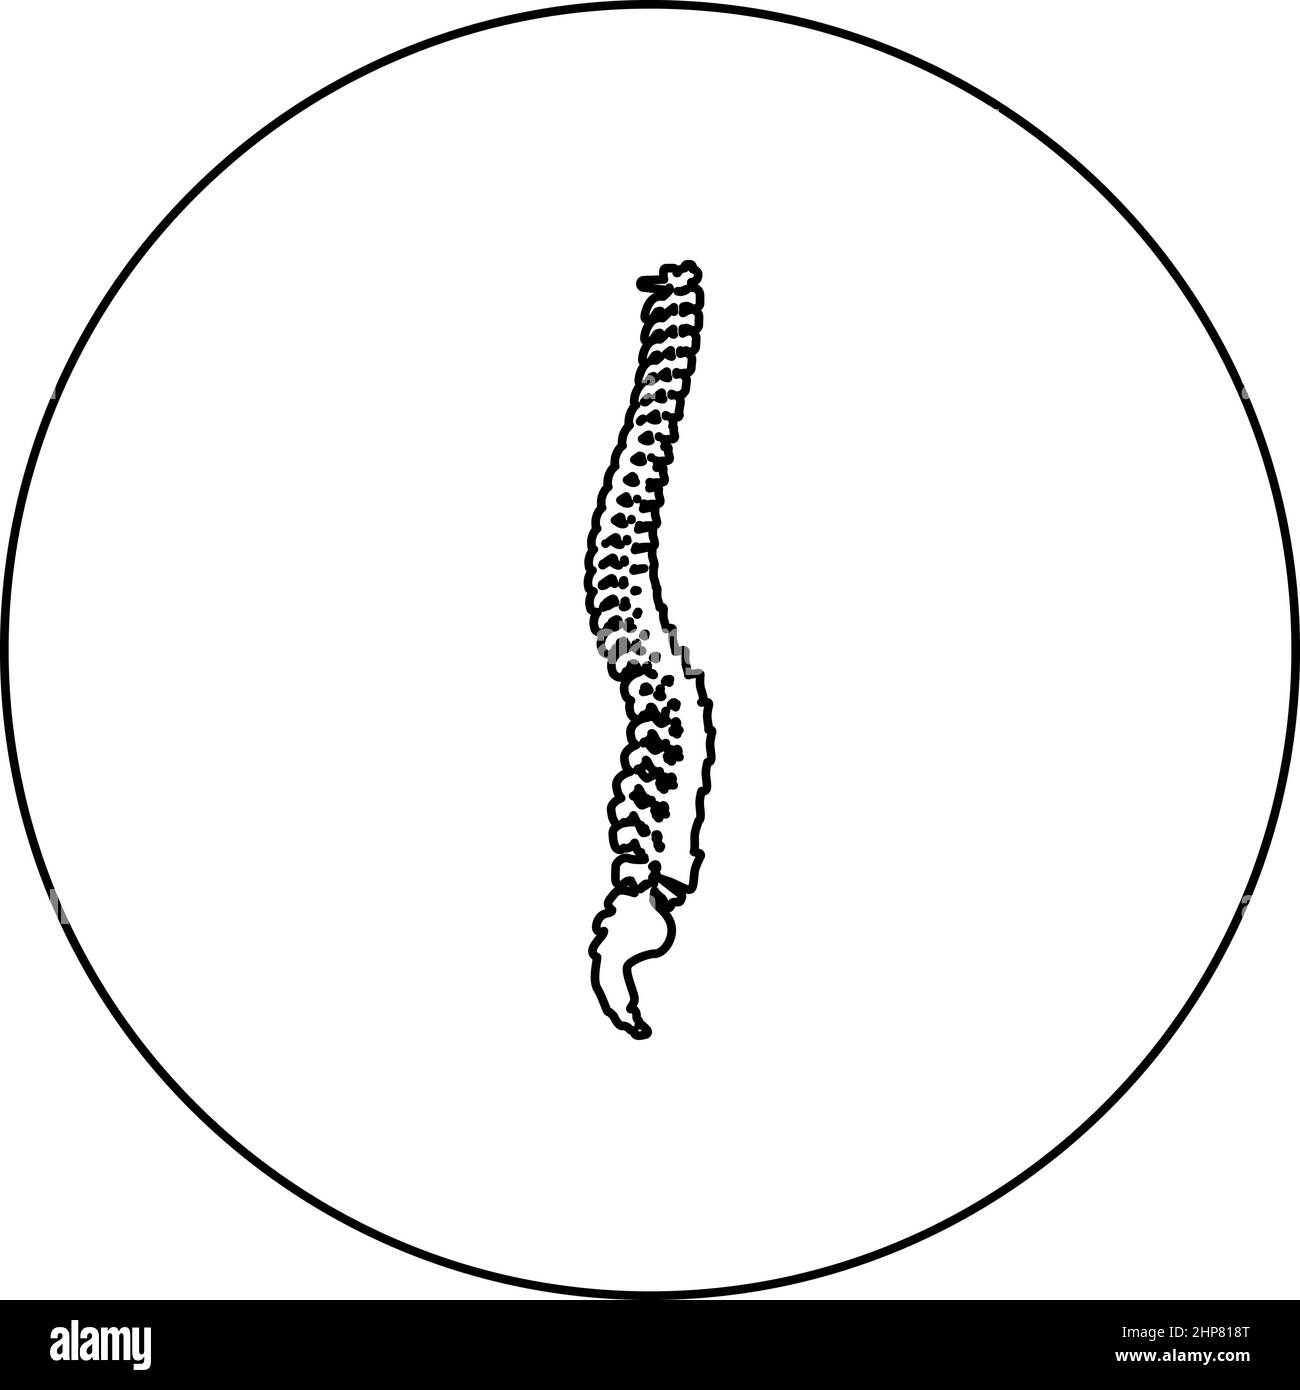 Wirbelsäule Wirbelsäule Wirbelsäule Rückgrat Symbol im Kreis rund schwarz Farbe Vektor Illustration Bild Umriss Kontur Linie dünnen Stil Stock Vektor